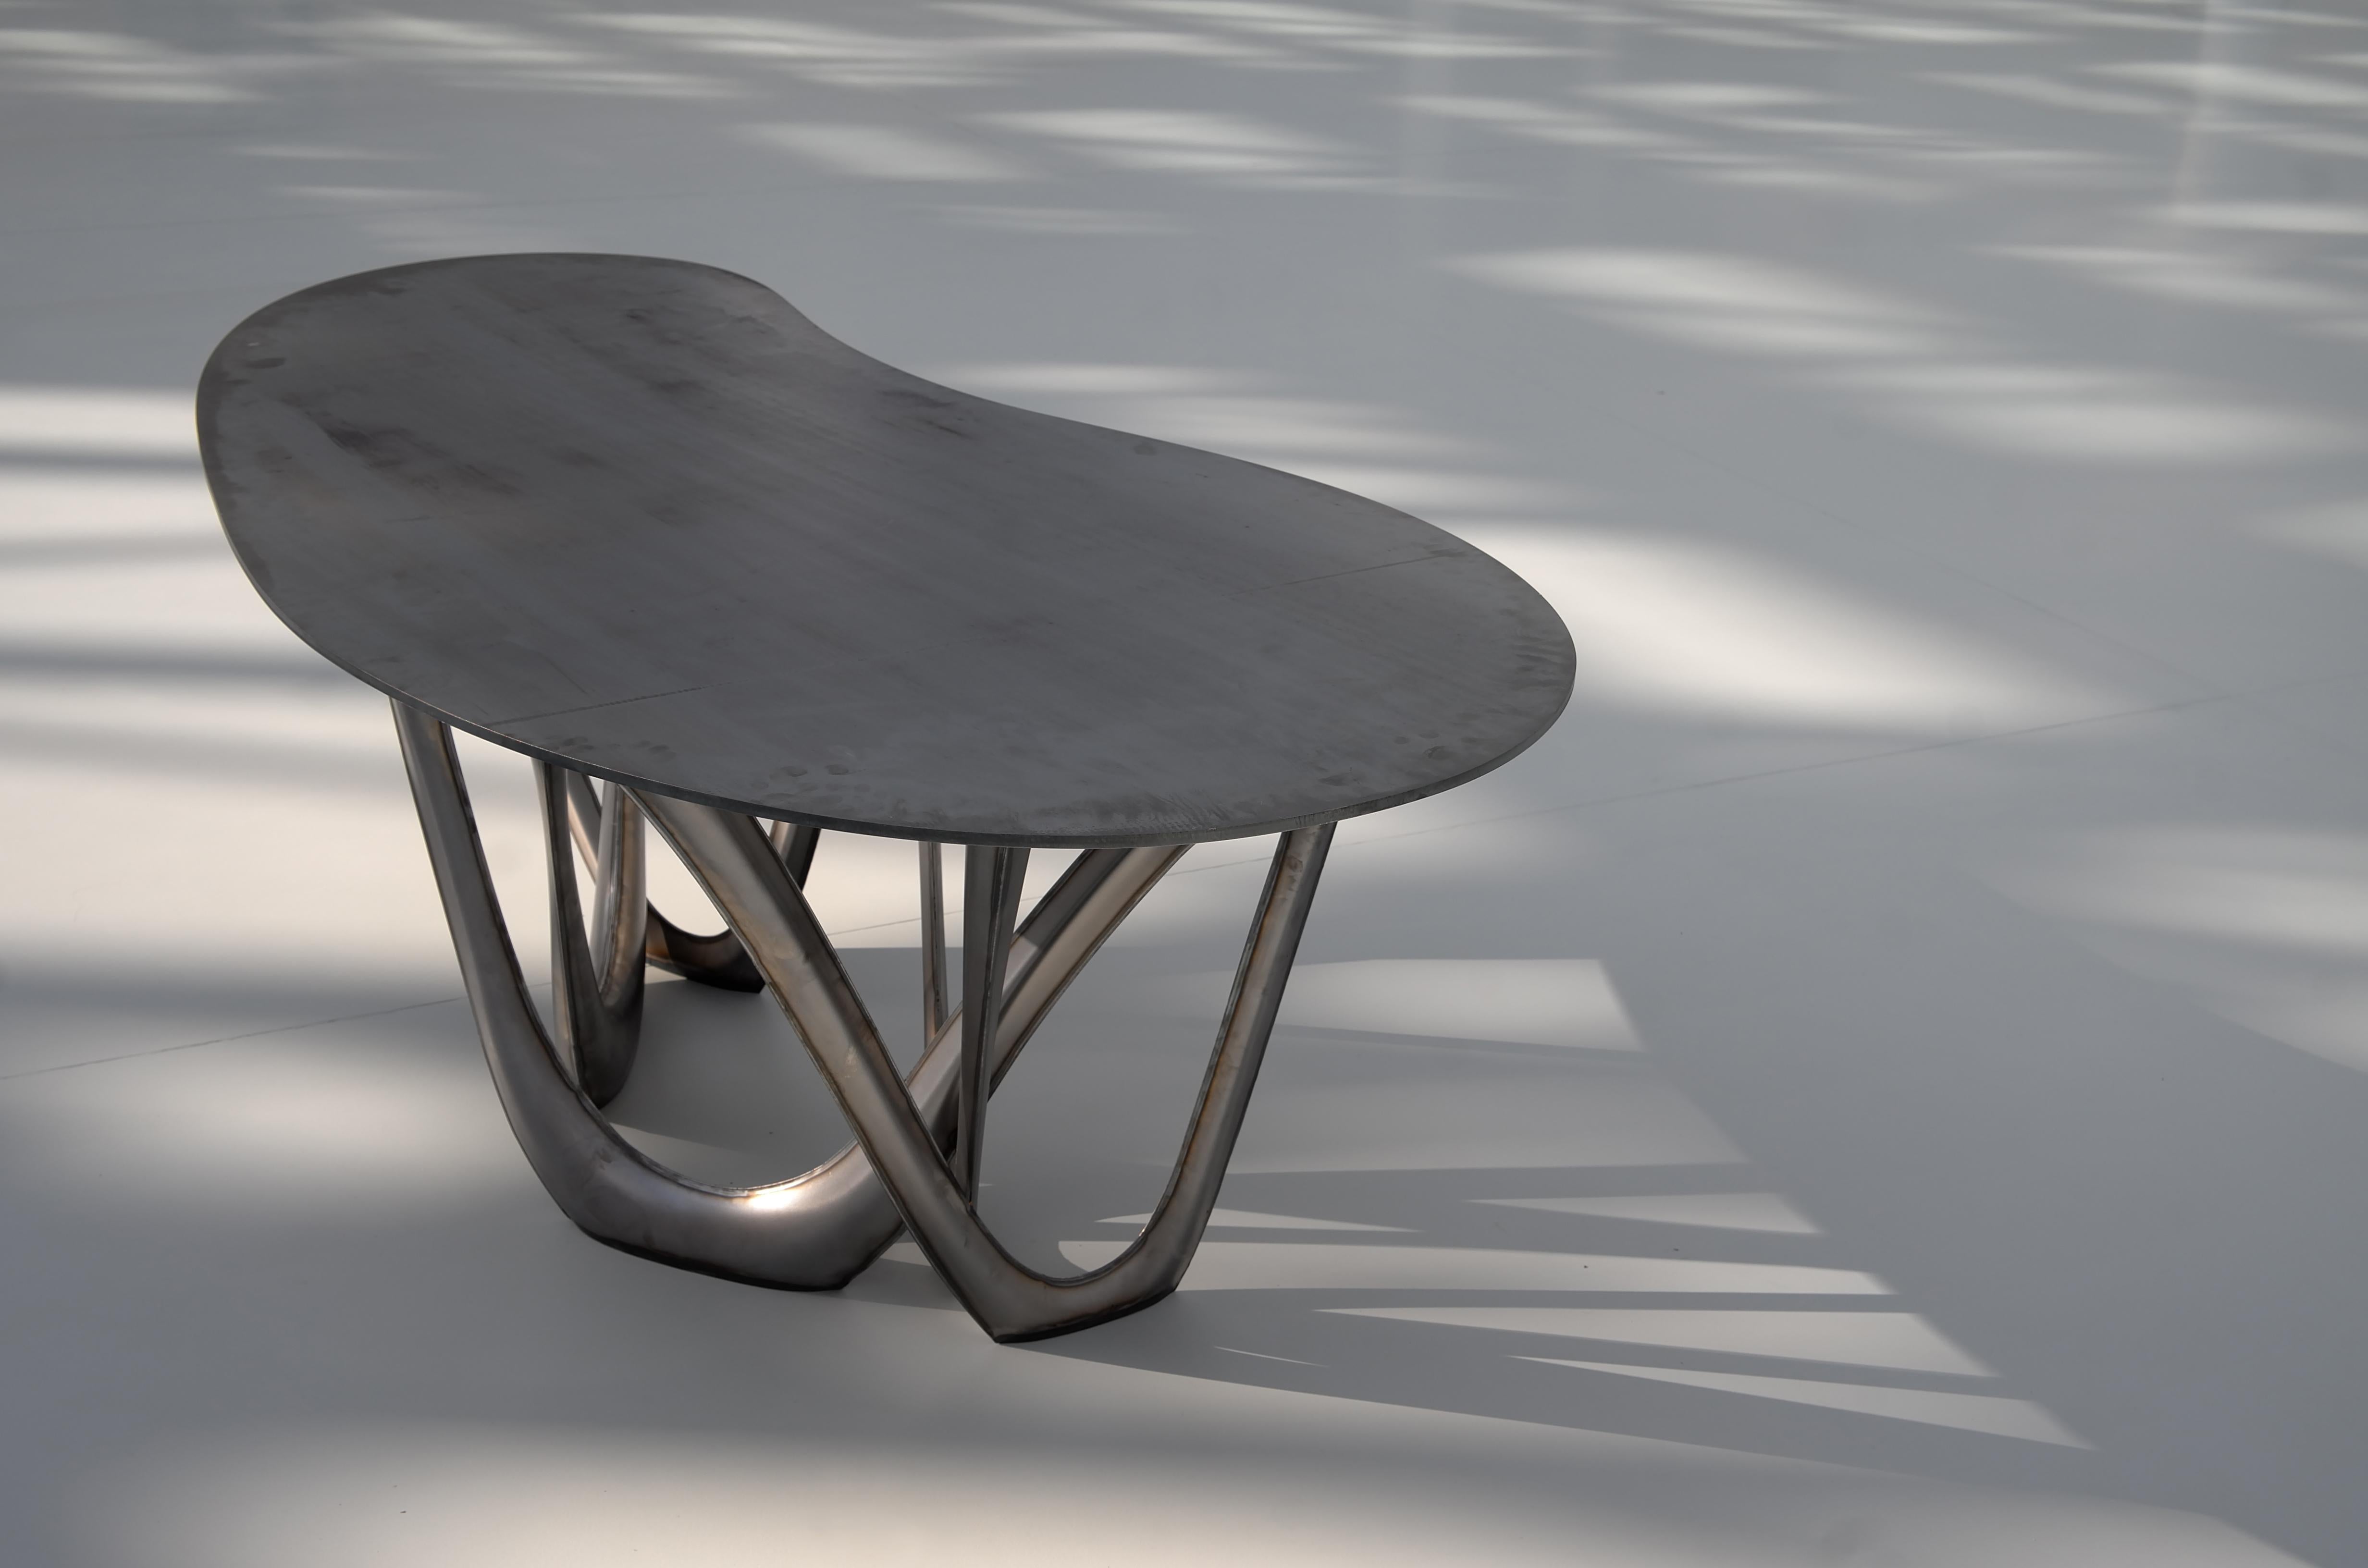 Table de salle à manger contemporaine « G-Table BC » de Zieta Prozessdesign

La base : Acier au carbone revêtu de poudre
Haut : Béton
Mesures : 75 x 220 x 110 cm.

Plusieurs finitions disponibles :
- Matériau de la base (acier à charbon / acier